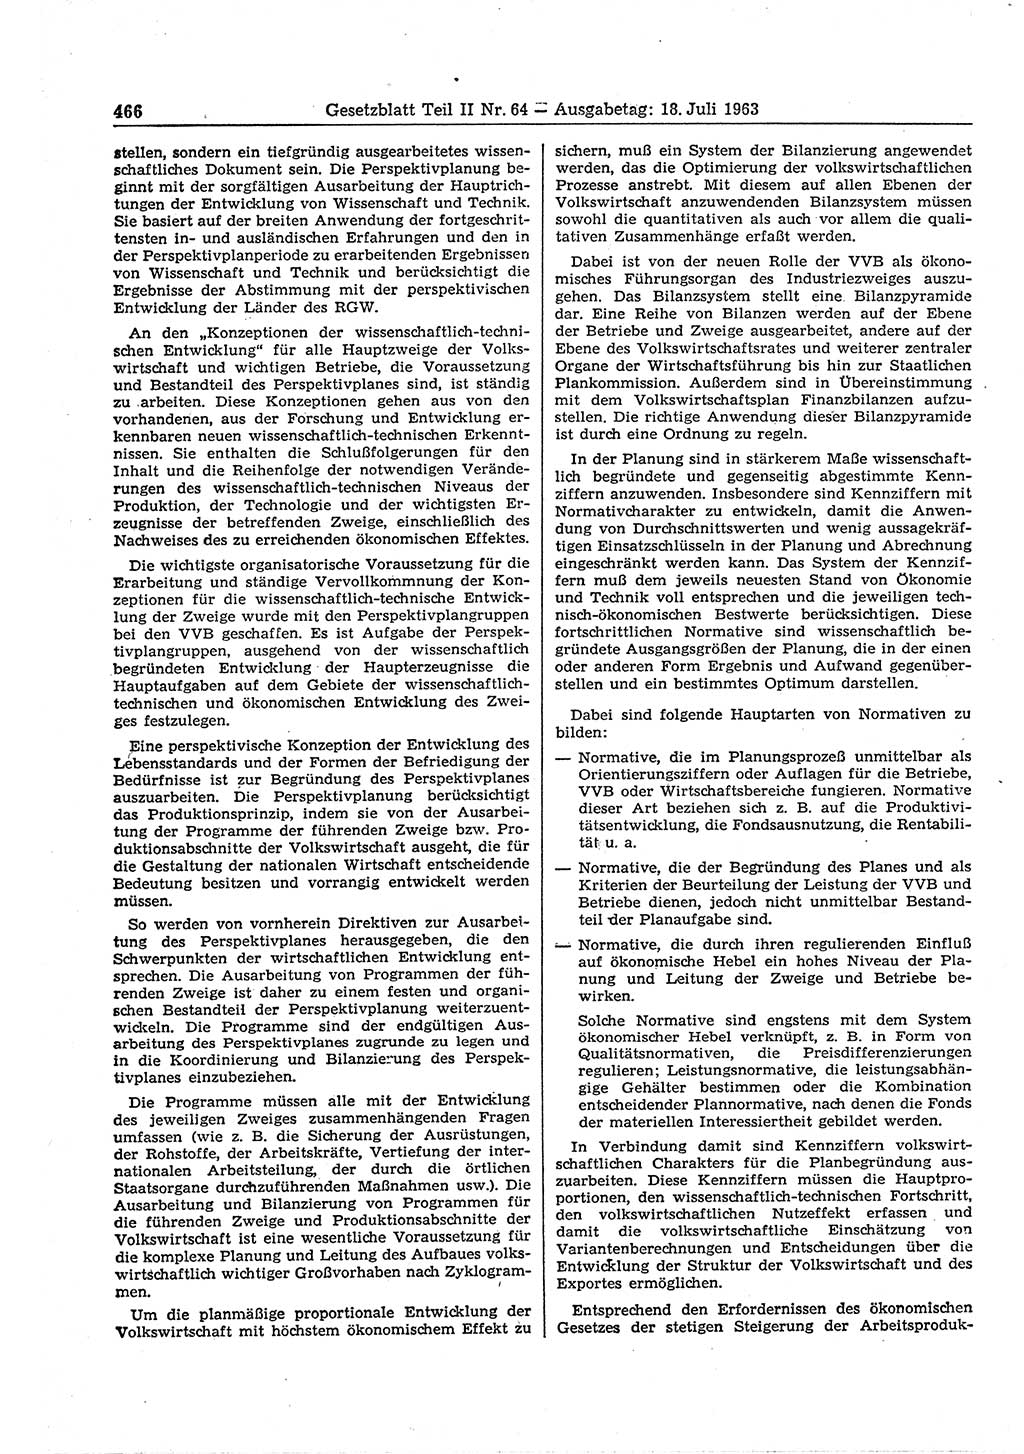 Gesetzblatt (GBl.) der Deutschen Demokratischen Republik (DDR) Teil ⅠⅠ 1963, Seite 466 (GBl. DDR ⅠⅠ 1963, S. 466)